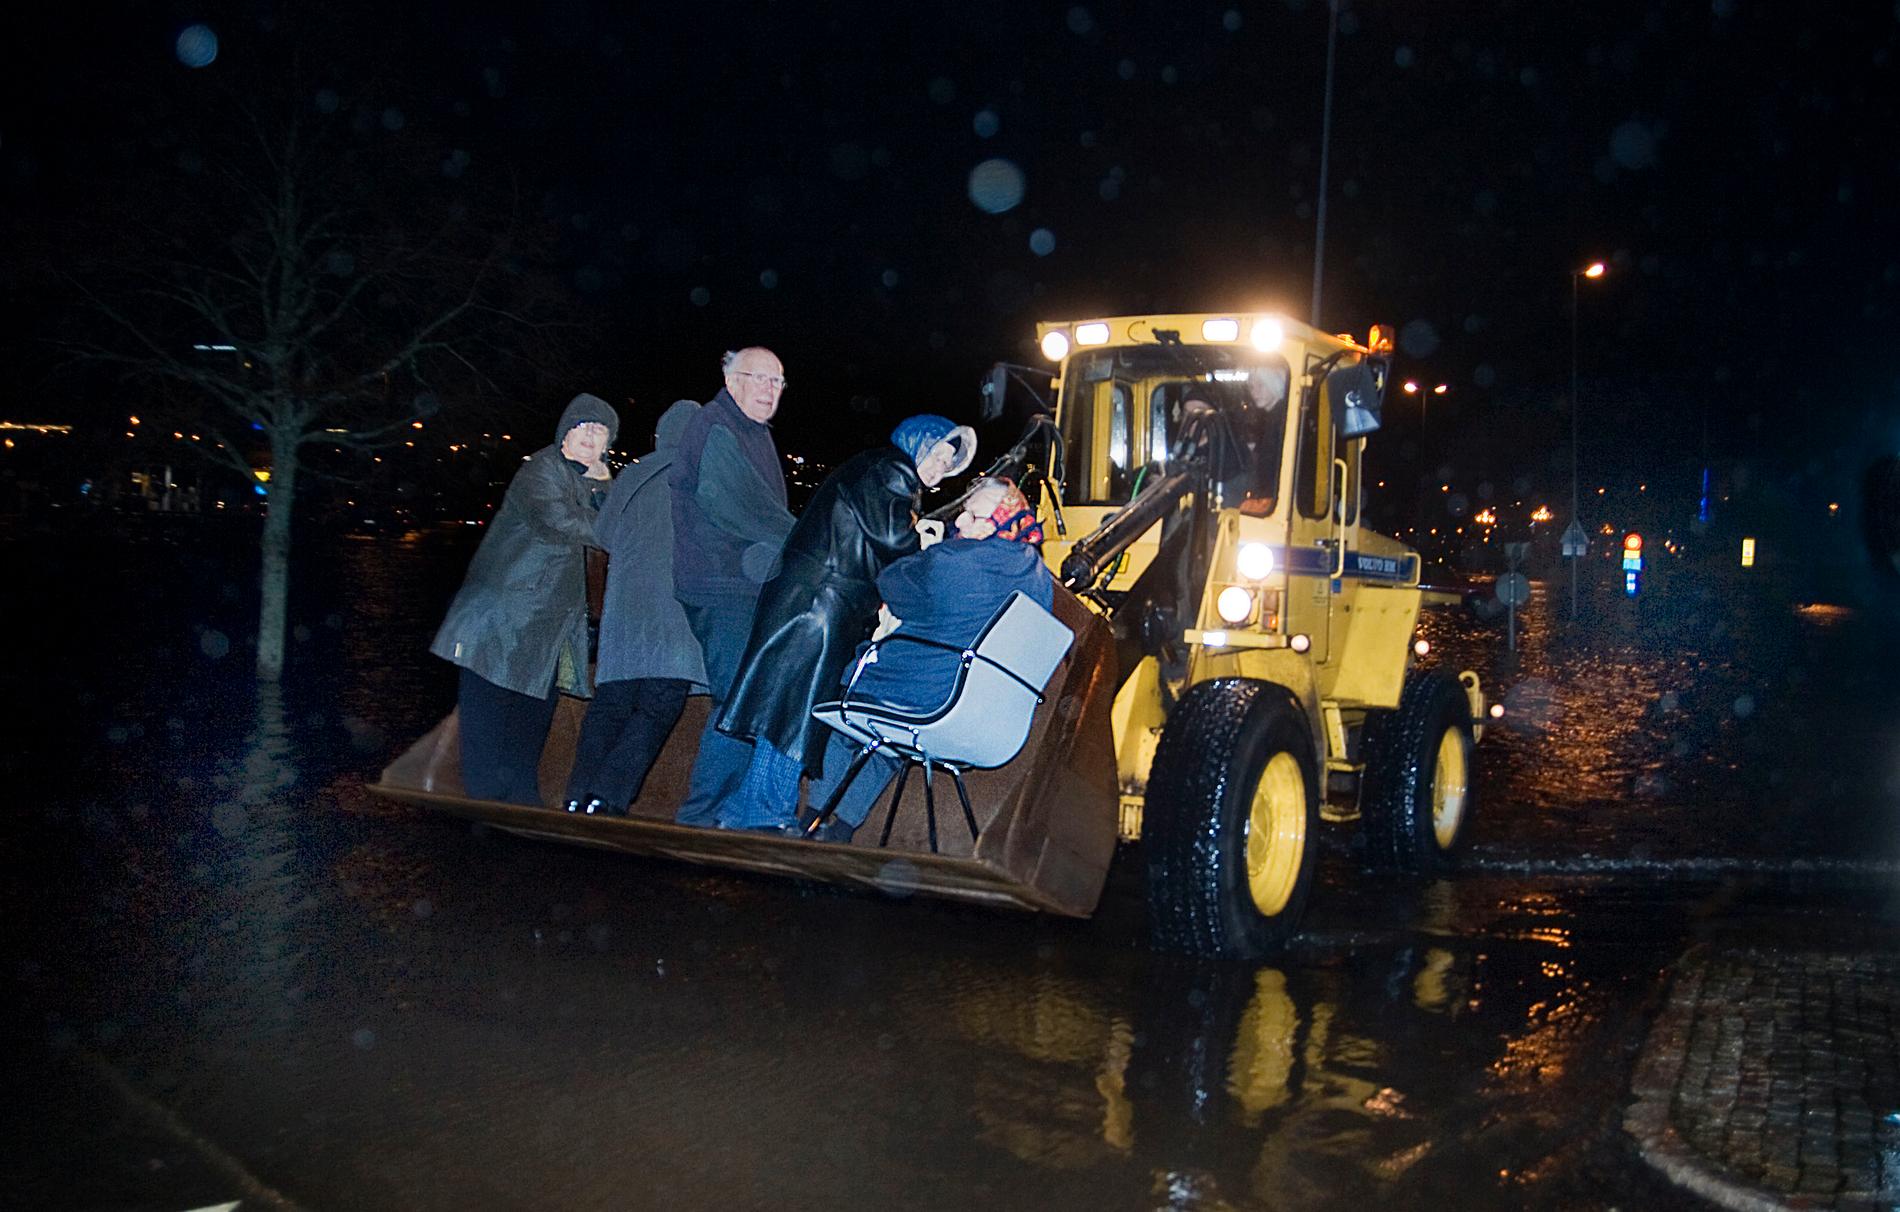 (H)julbordsräddade I Uddevalla tvingades julbordsfirare att evakueras med hjullastare.